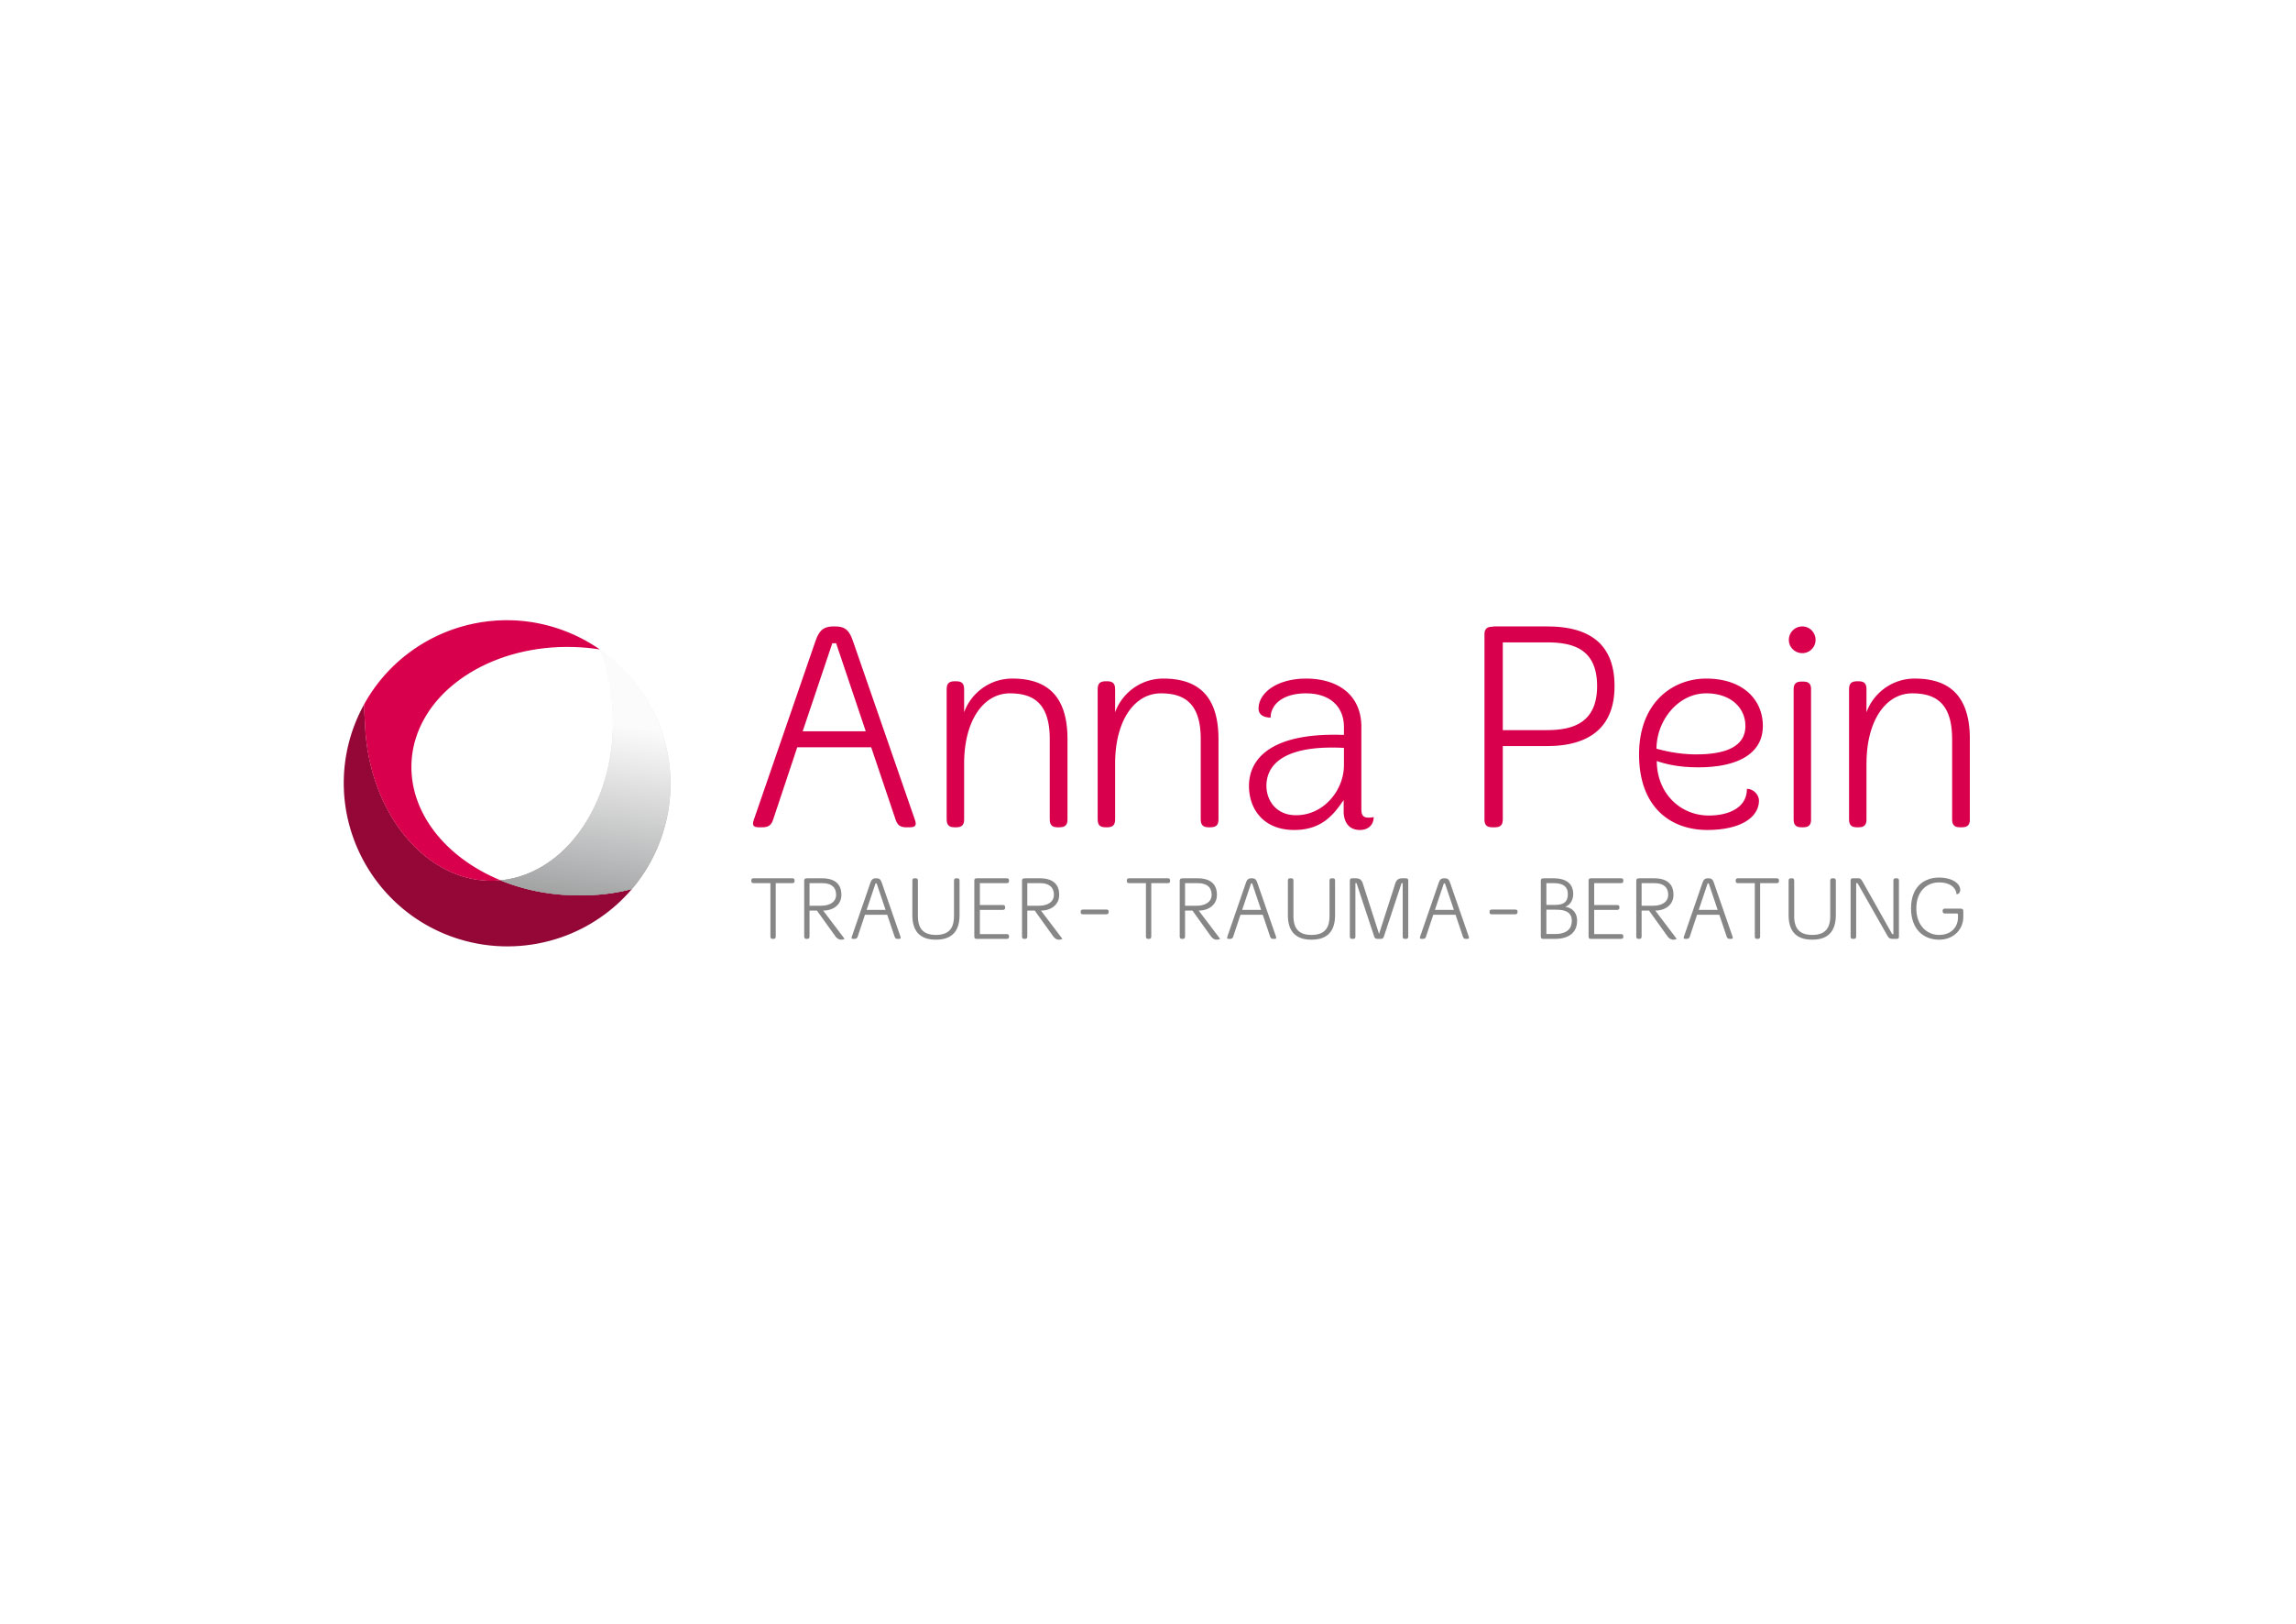 Anna Pein – Trauer Trauma Beratung